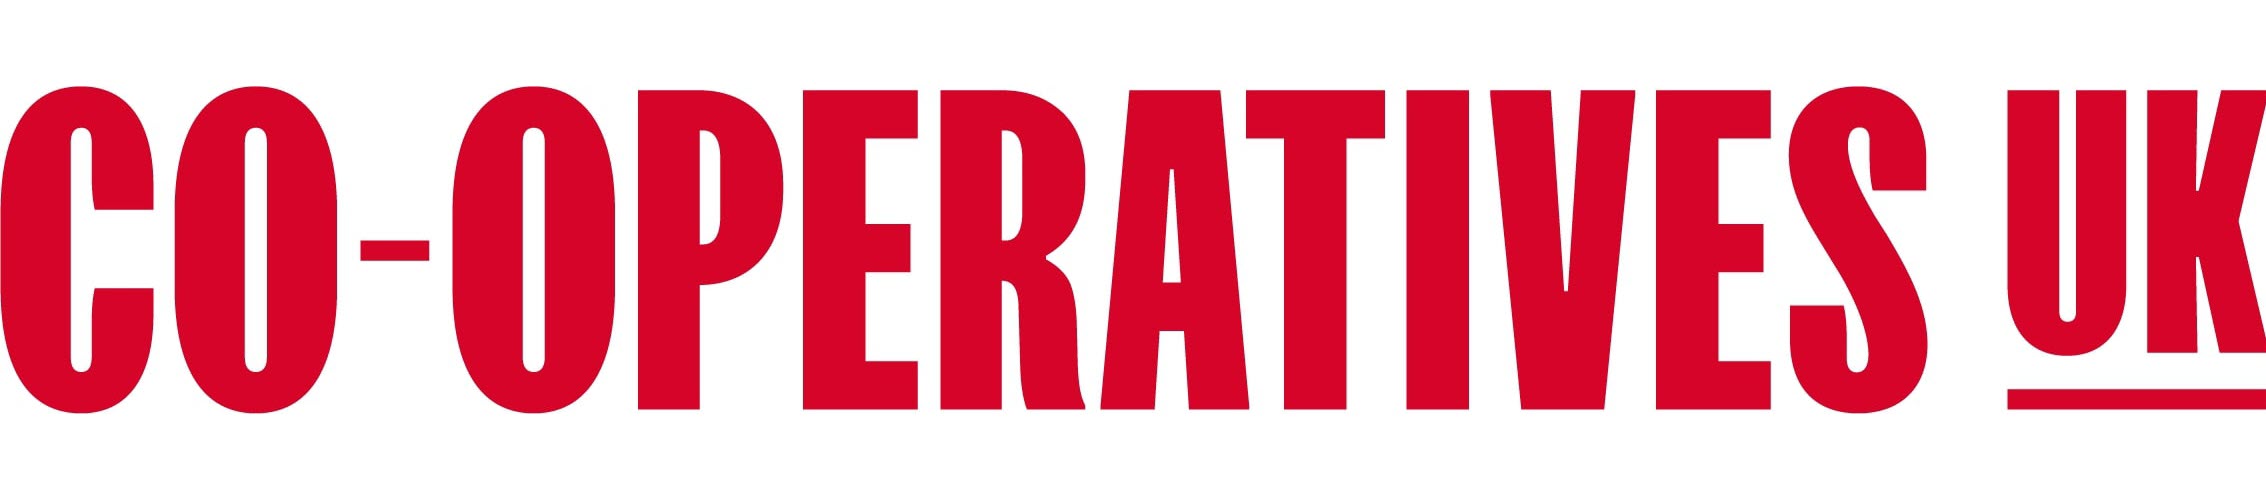 Co-operatives UK logo